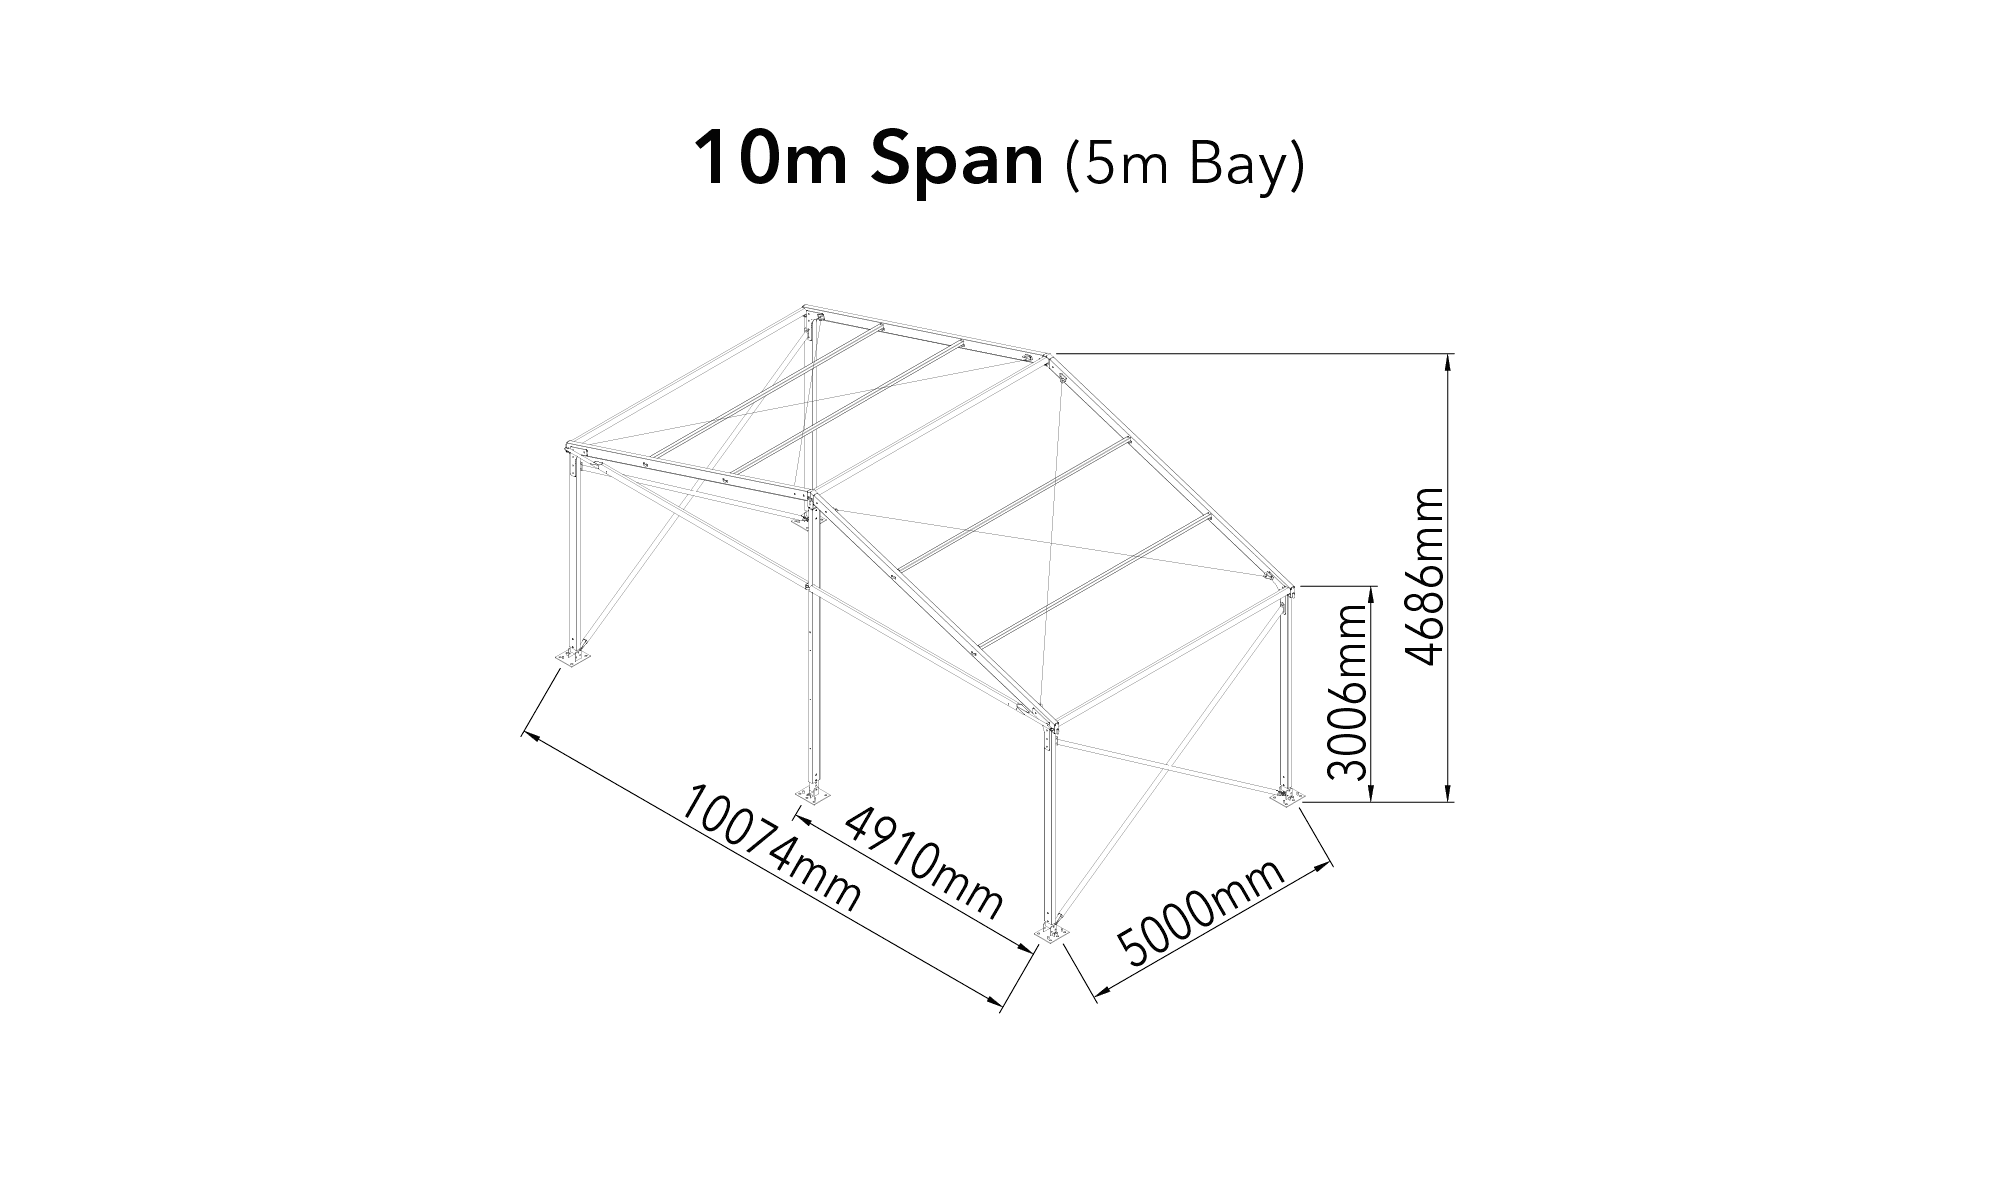 crest diagram ed 166 10m span